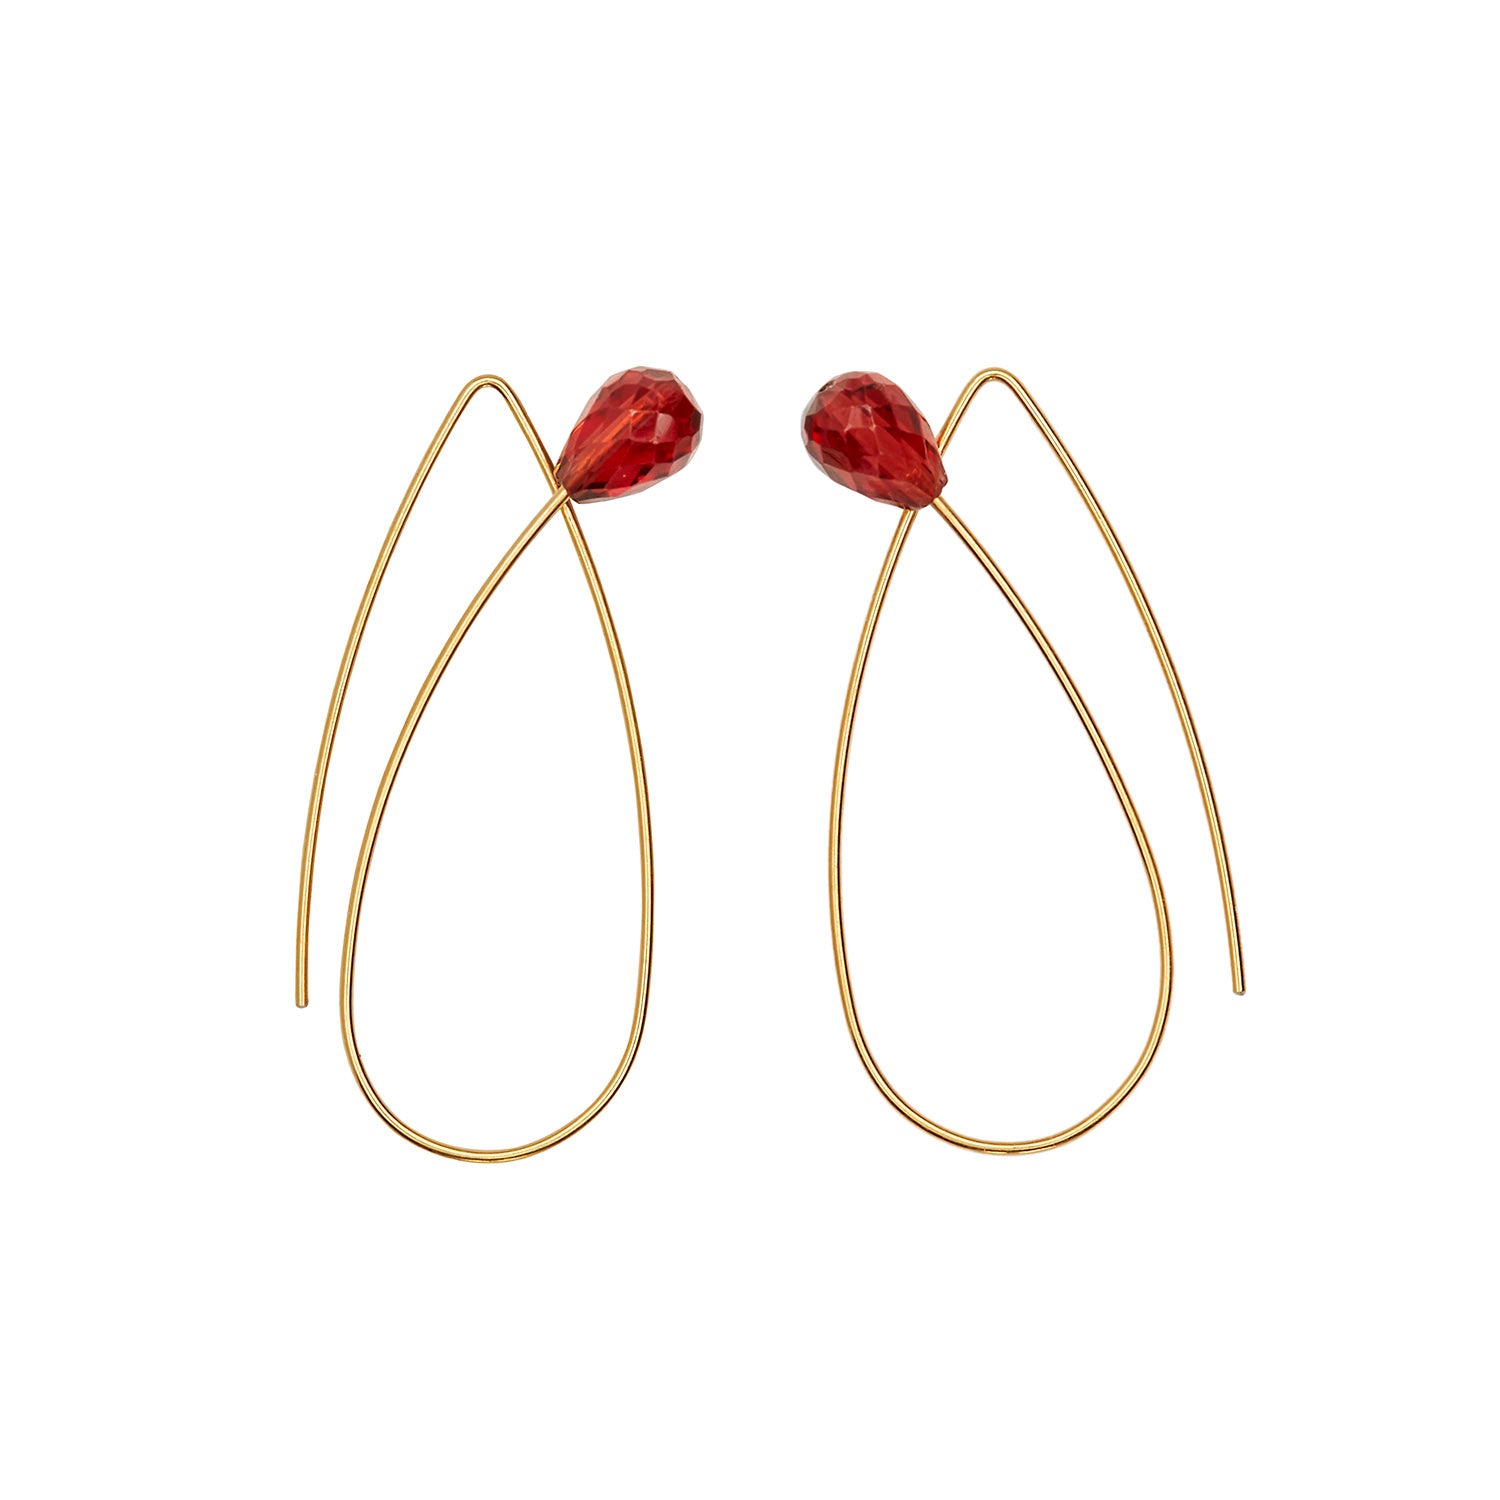 Pointed Loop Earrings with Garnet